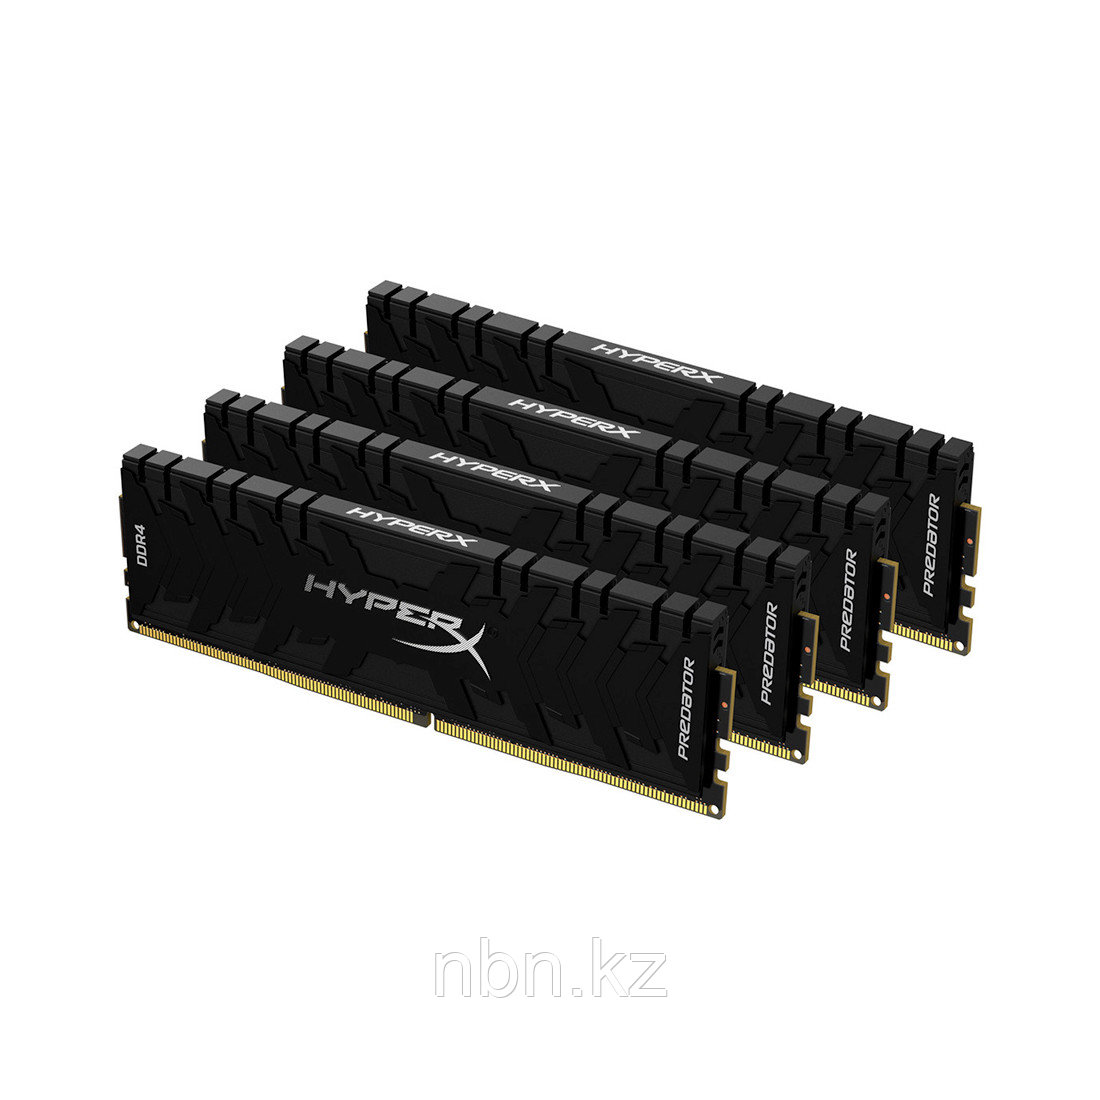 Комплект модулей памяти Kingston HyperX Predator HX432C16PB3K4/128 DDR4 128G (4x32G) 3200MHz, фото 1